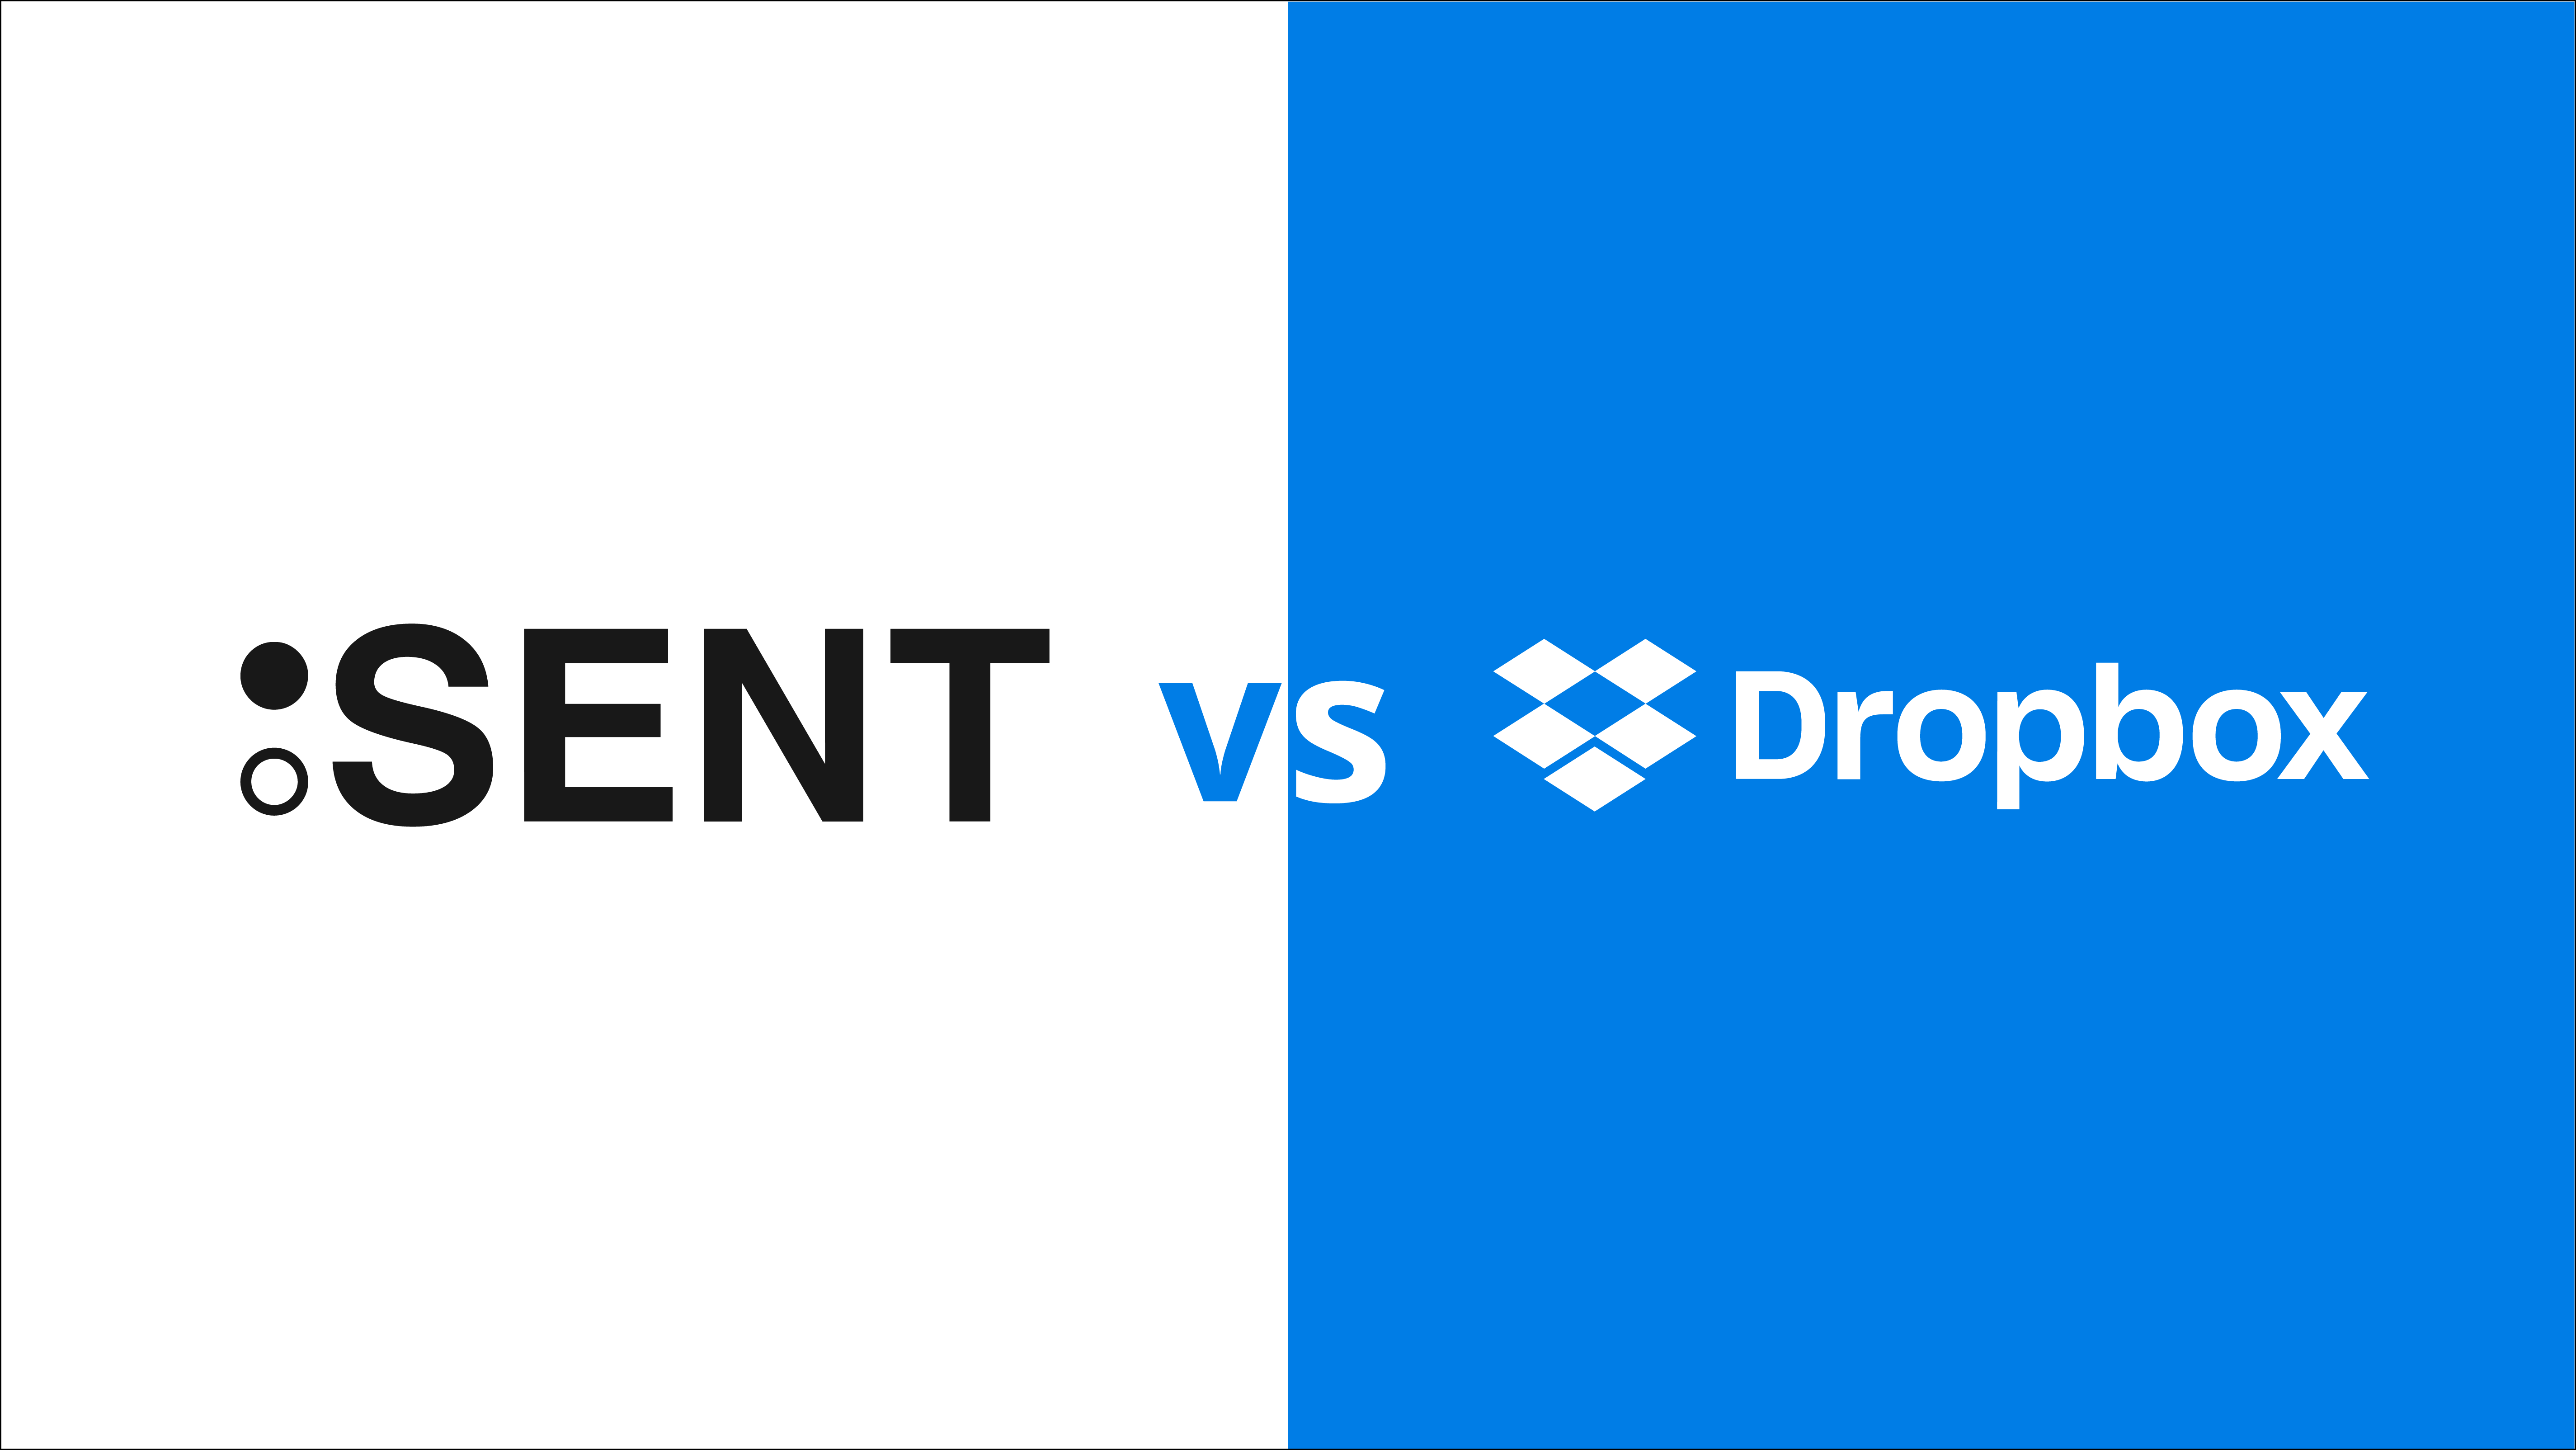 SENT vs. Dropbox